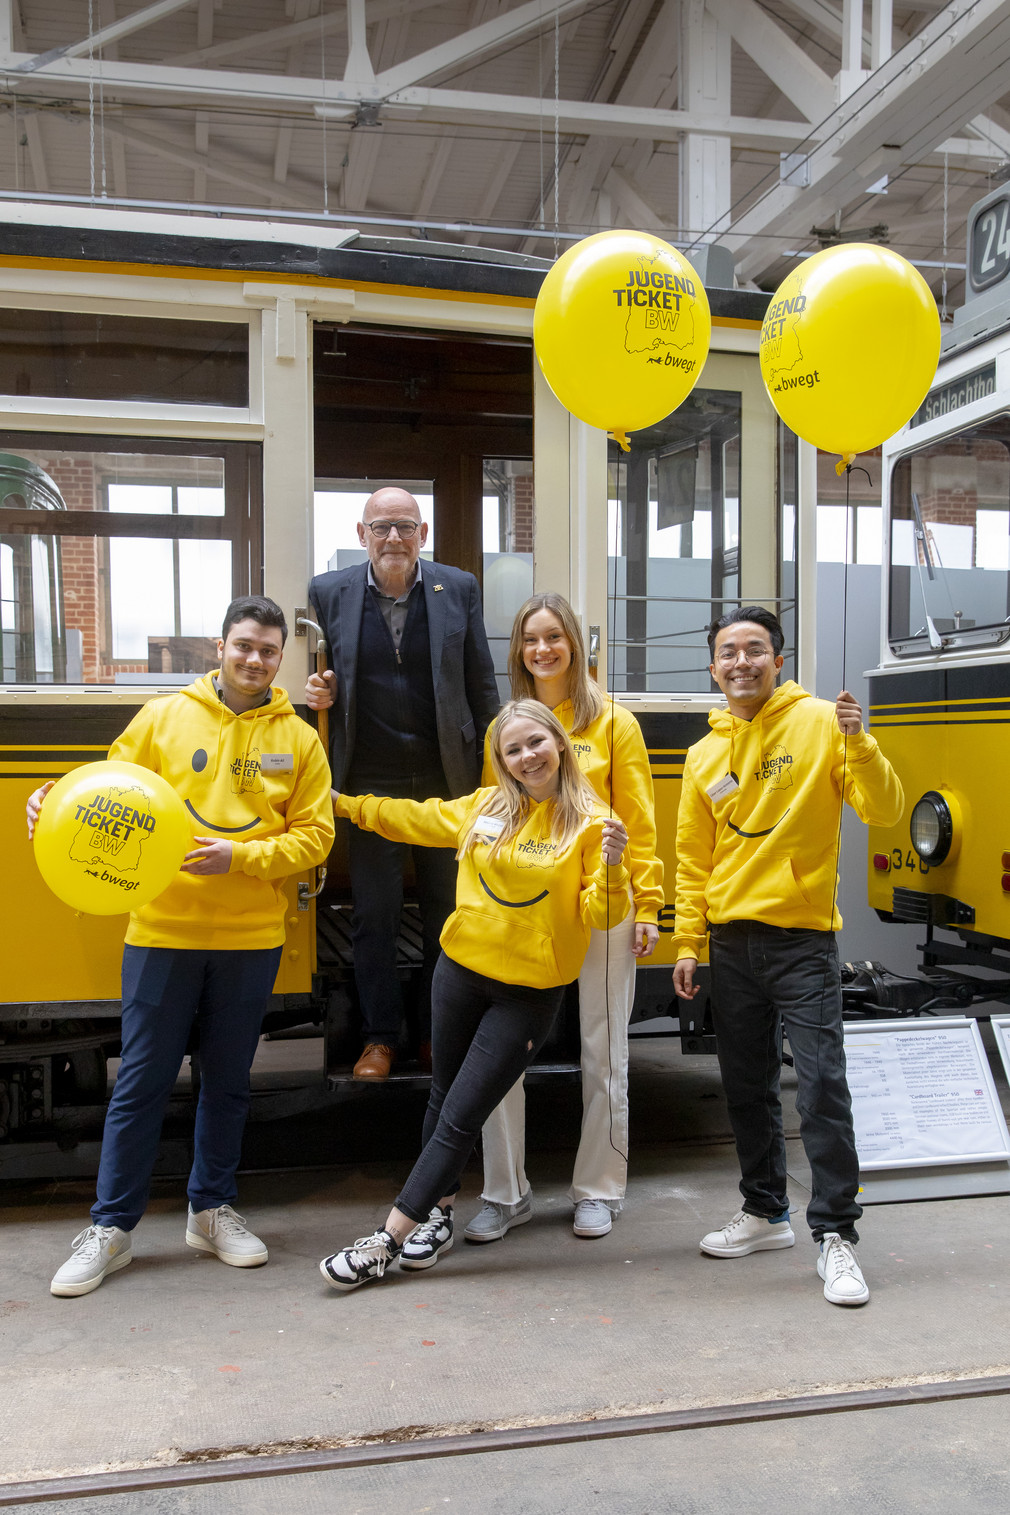 Vier fröhliche junge Menschen in gelben Hoodies mit JugendticketBW-Design und mit drei ebensolchen Luftballons vor einer alten Straßenbahn, während Minister Hermann im Eingangsbereich der Straßenbahn steht.